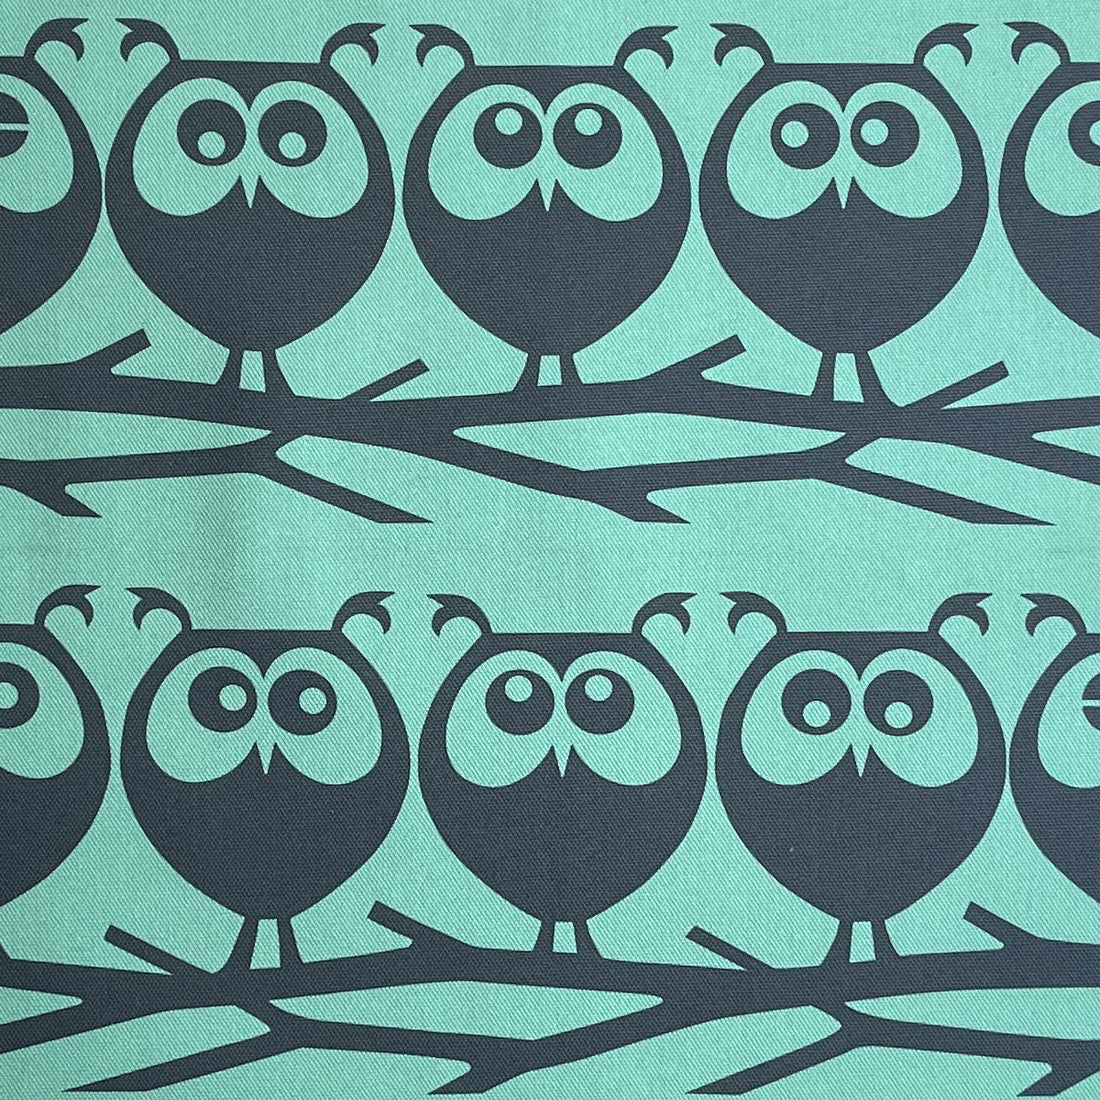 Magpie x Hornsea Owls on Branch Tea Towel